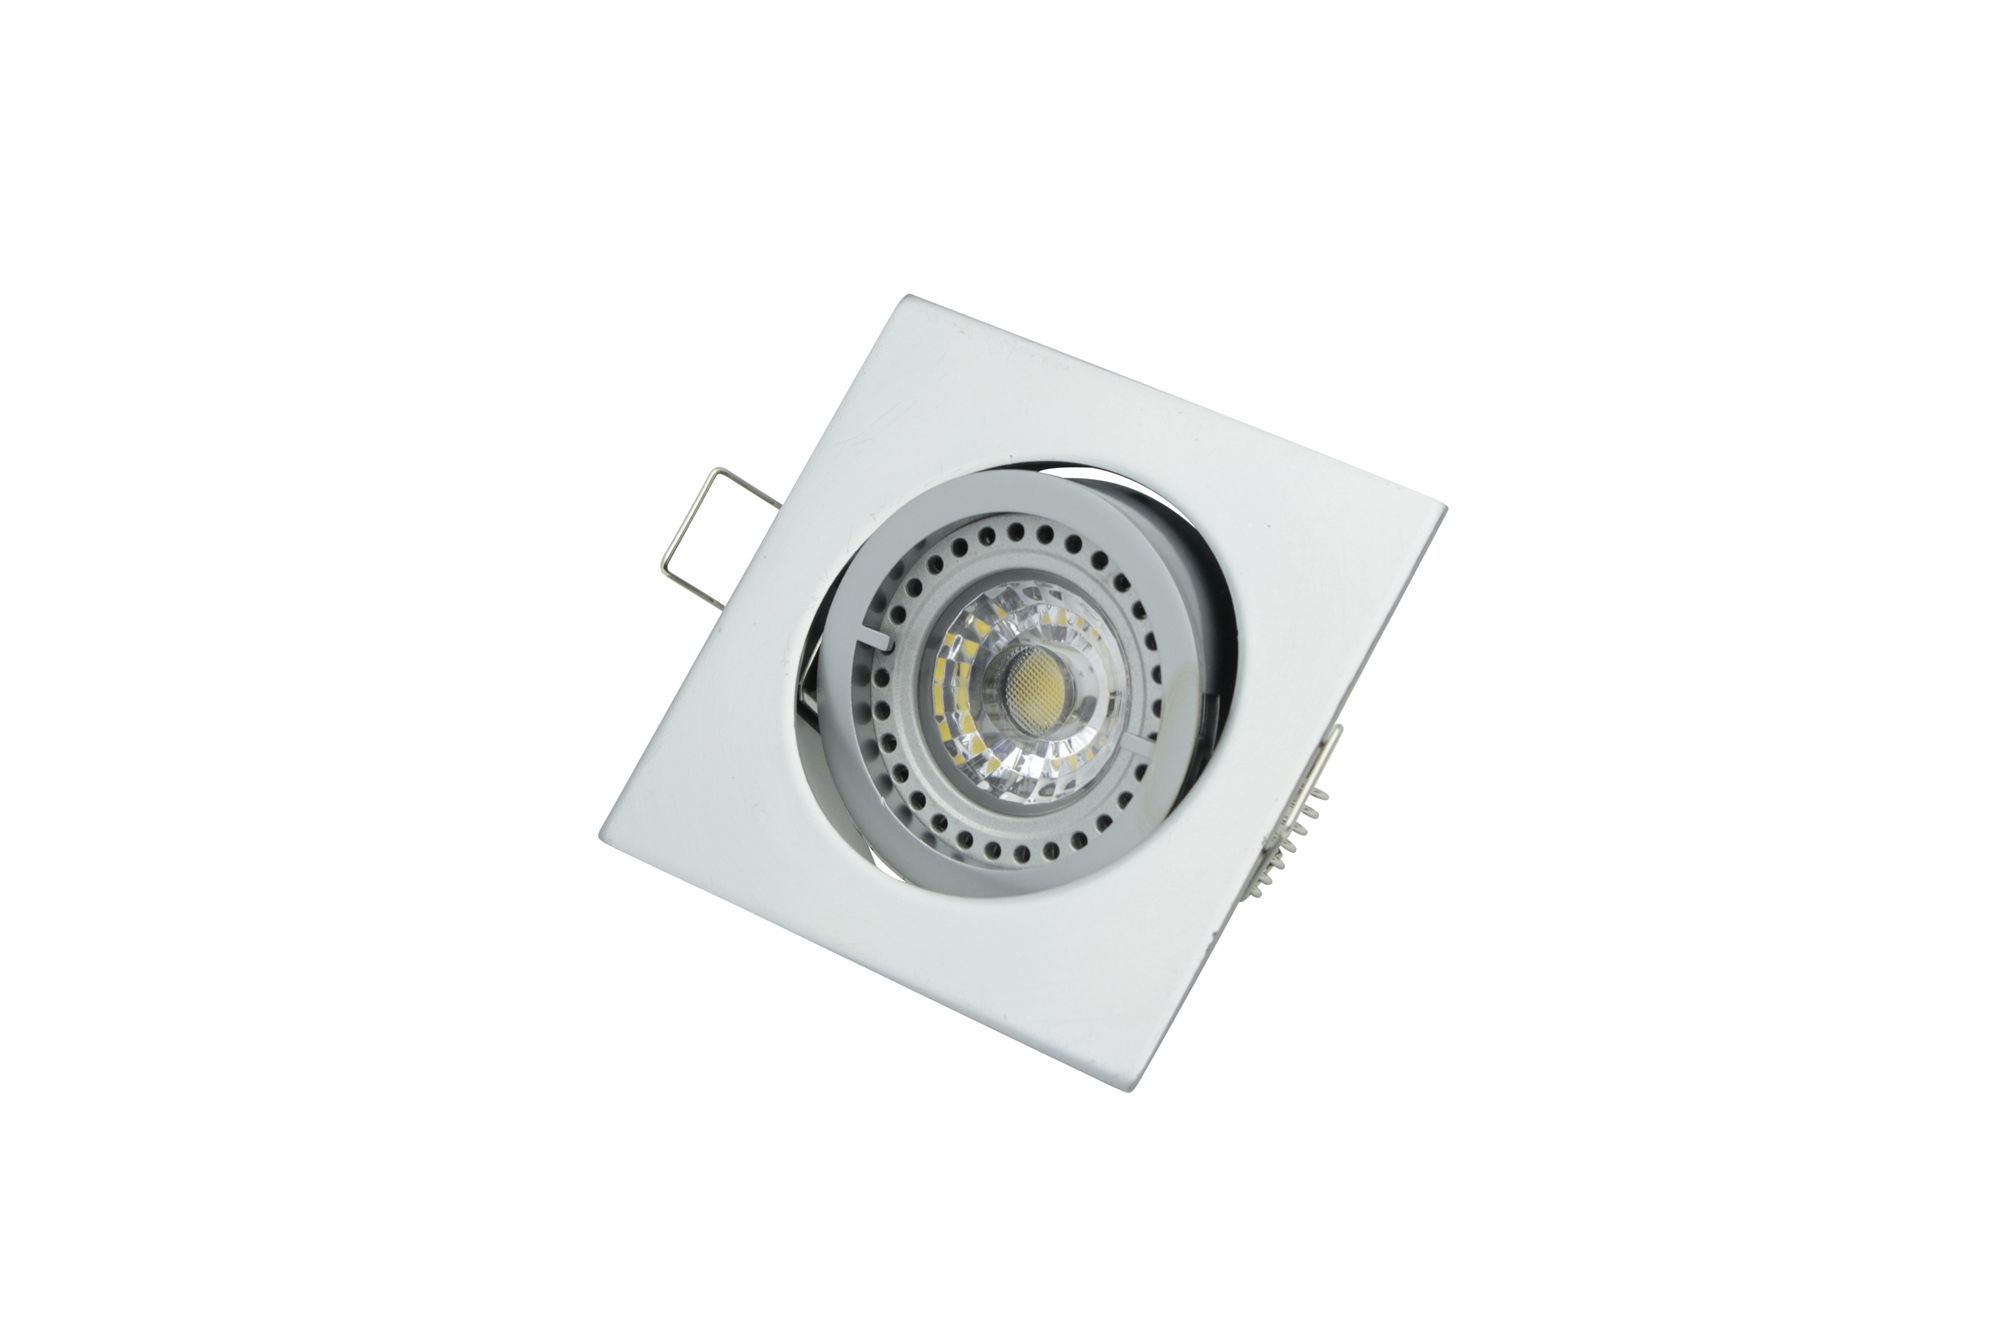 Lampenlux LED-Einbaustrahler Spot Snap eckig Chrom matt schwenkbar 8.2x8.2cm 12V rostfrei